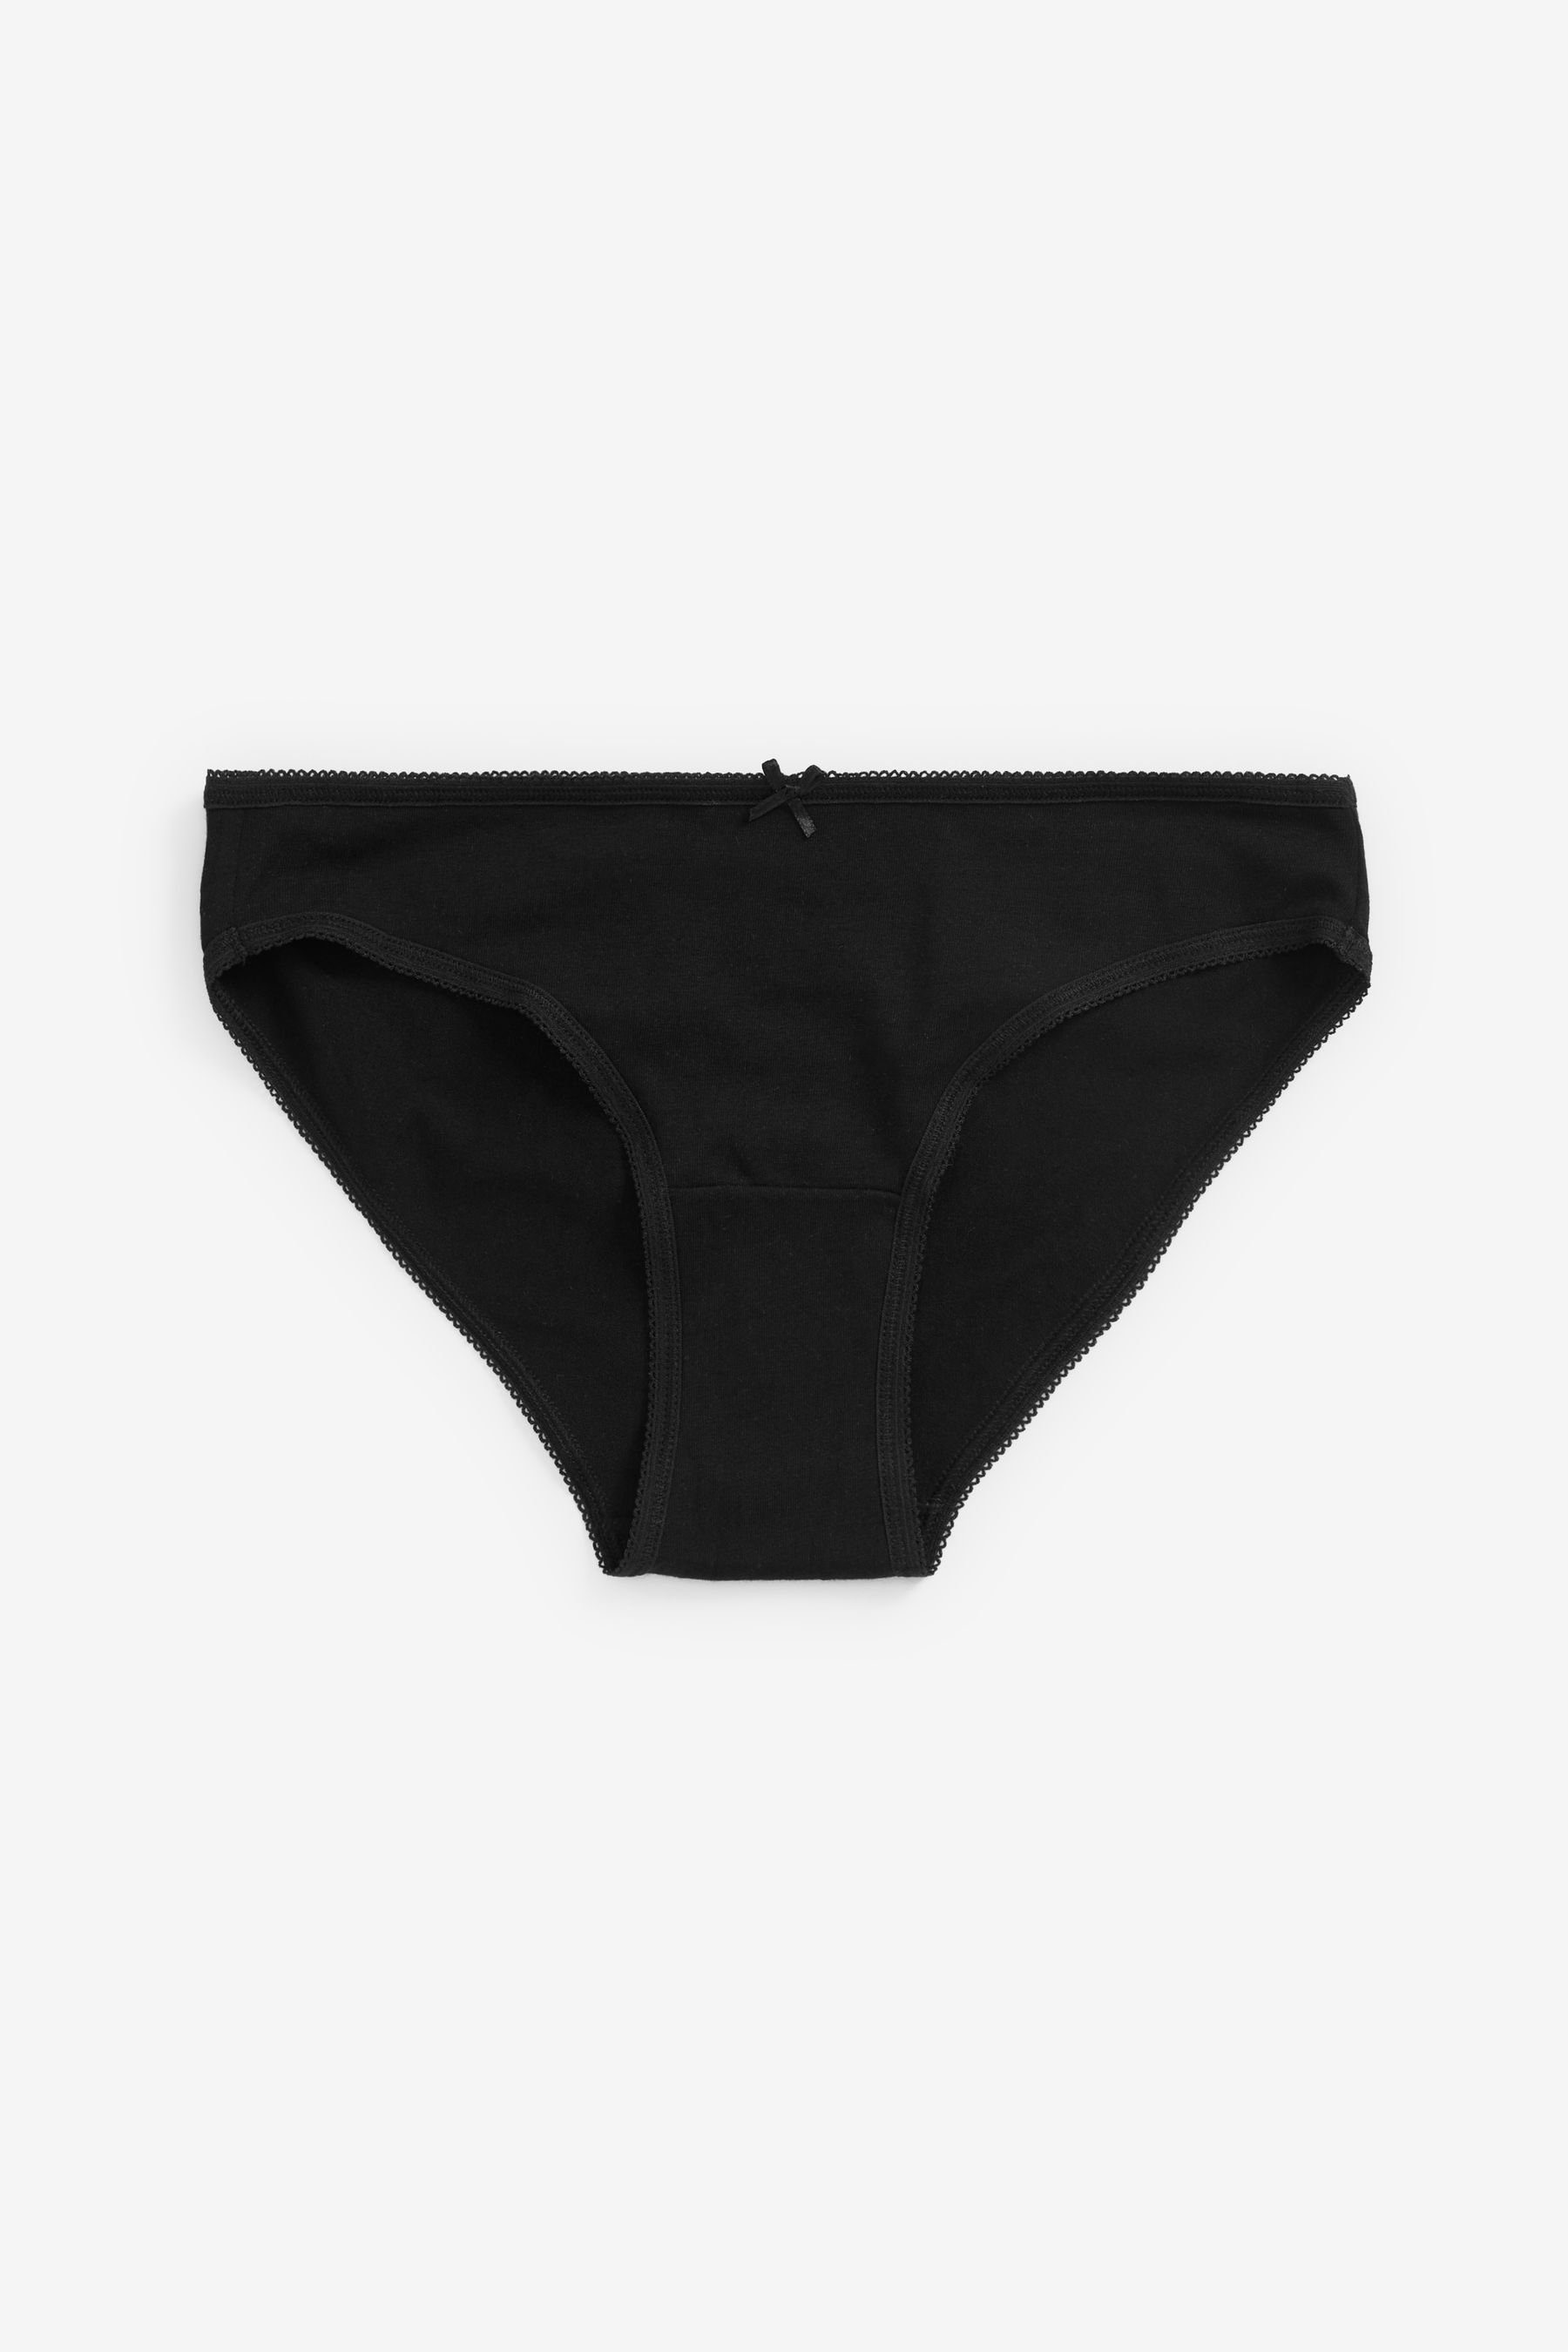 Black/White/Nougat aus Next Bikini-Slips 6er-Pack Bikinislip (6-St) Baumwollmix